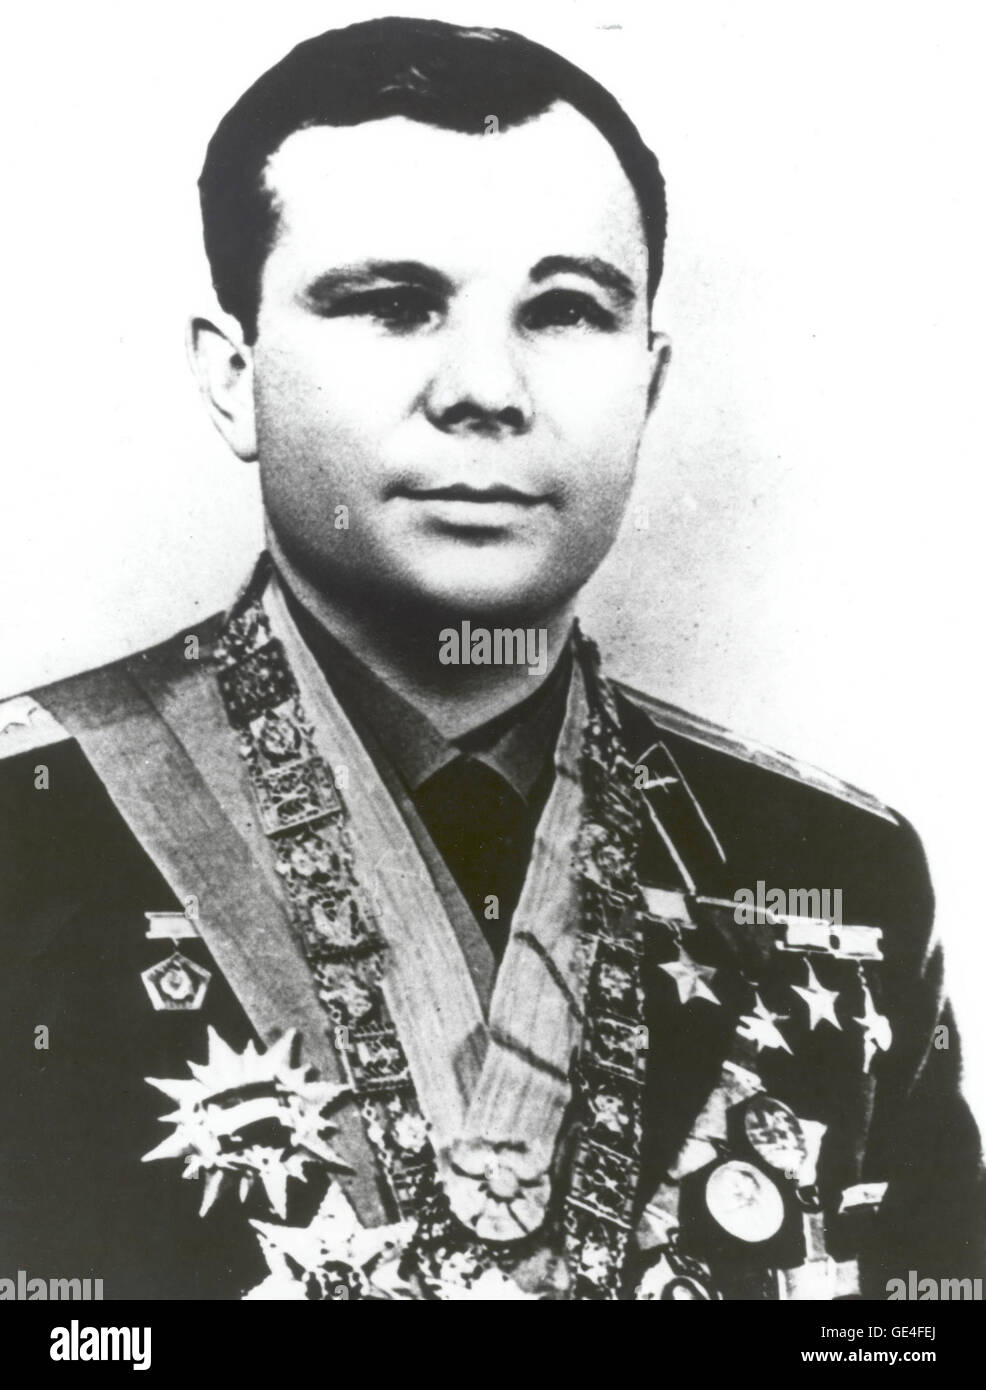 Yuri Gagarin wurde am 9. März 1934 in einer Stadt außerhalb von Moskau, Russland geboren. Nach dem Abitur im Jahre 1949 ging Gagarin an mehrere Fachschulen vor seinem Eintritt in die Air Force-Hochschule Orenburg im Jahr 1955. Er begann seine Ausbildung im Jahr 1960 zusammen mit 19 anderen Kandidaten Kosmonaut. Am 12. April 1961 am 09:06 Gagarin abgehoben in der Wostok 1 Raumfahrzeug und nach einem 108-minütige Flug von erweiterten Mikrogravitation, Fallschirm er sicher auf den Boden in der Region Saratow der UdSSR. Als der erste Mensch im Weltraum fliegen absolvierte er eine Umlaufbahn um die Erde. Nach seinem Stockfoto